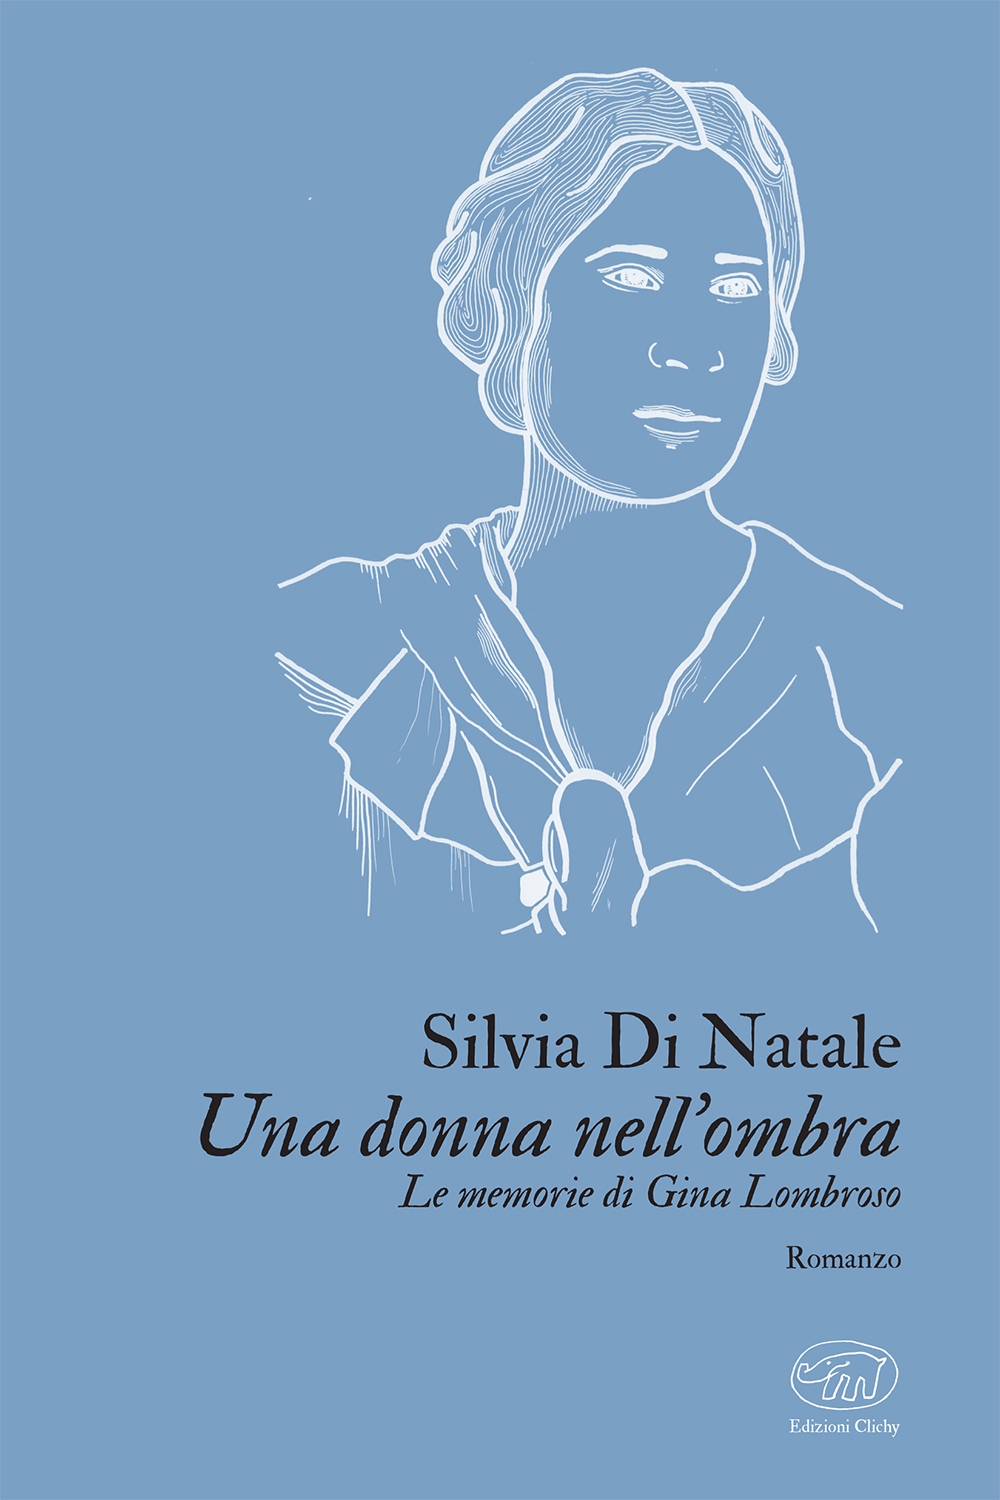 Copertina del libro "Una donna nell'ombra. Le memorie di Gina Lombroso" di Silvia Di Natale